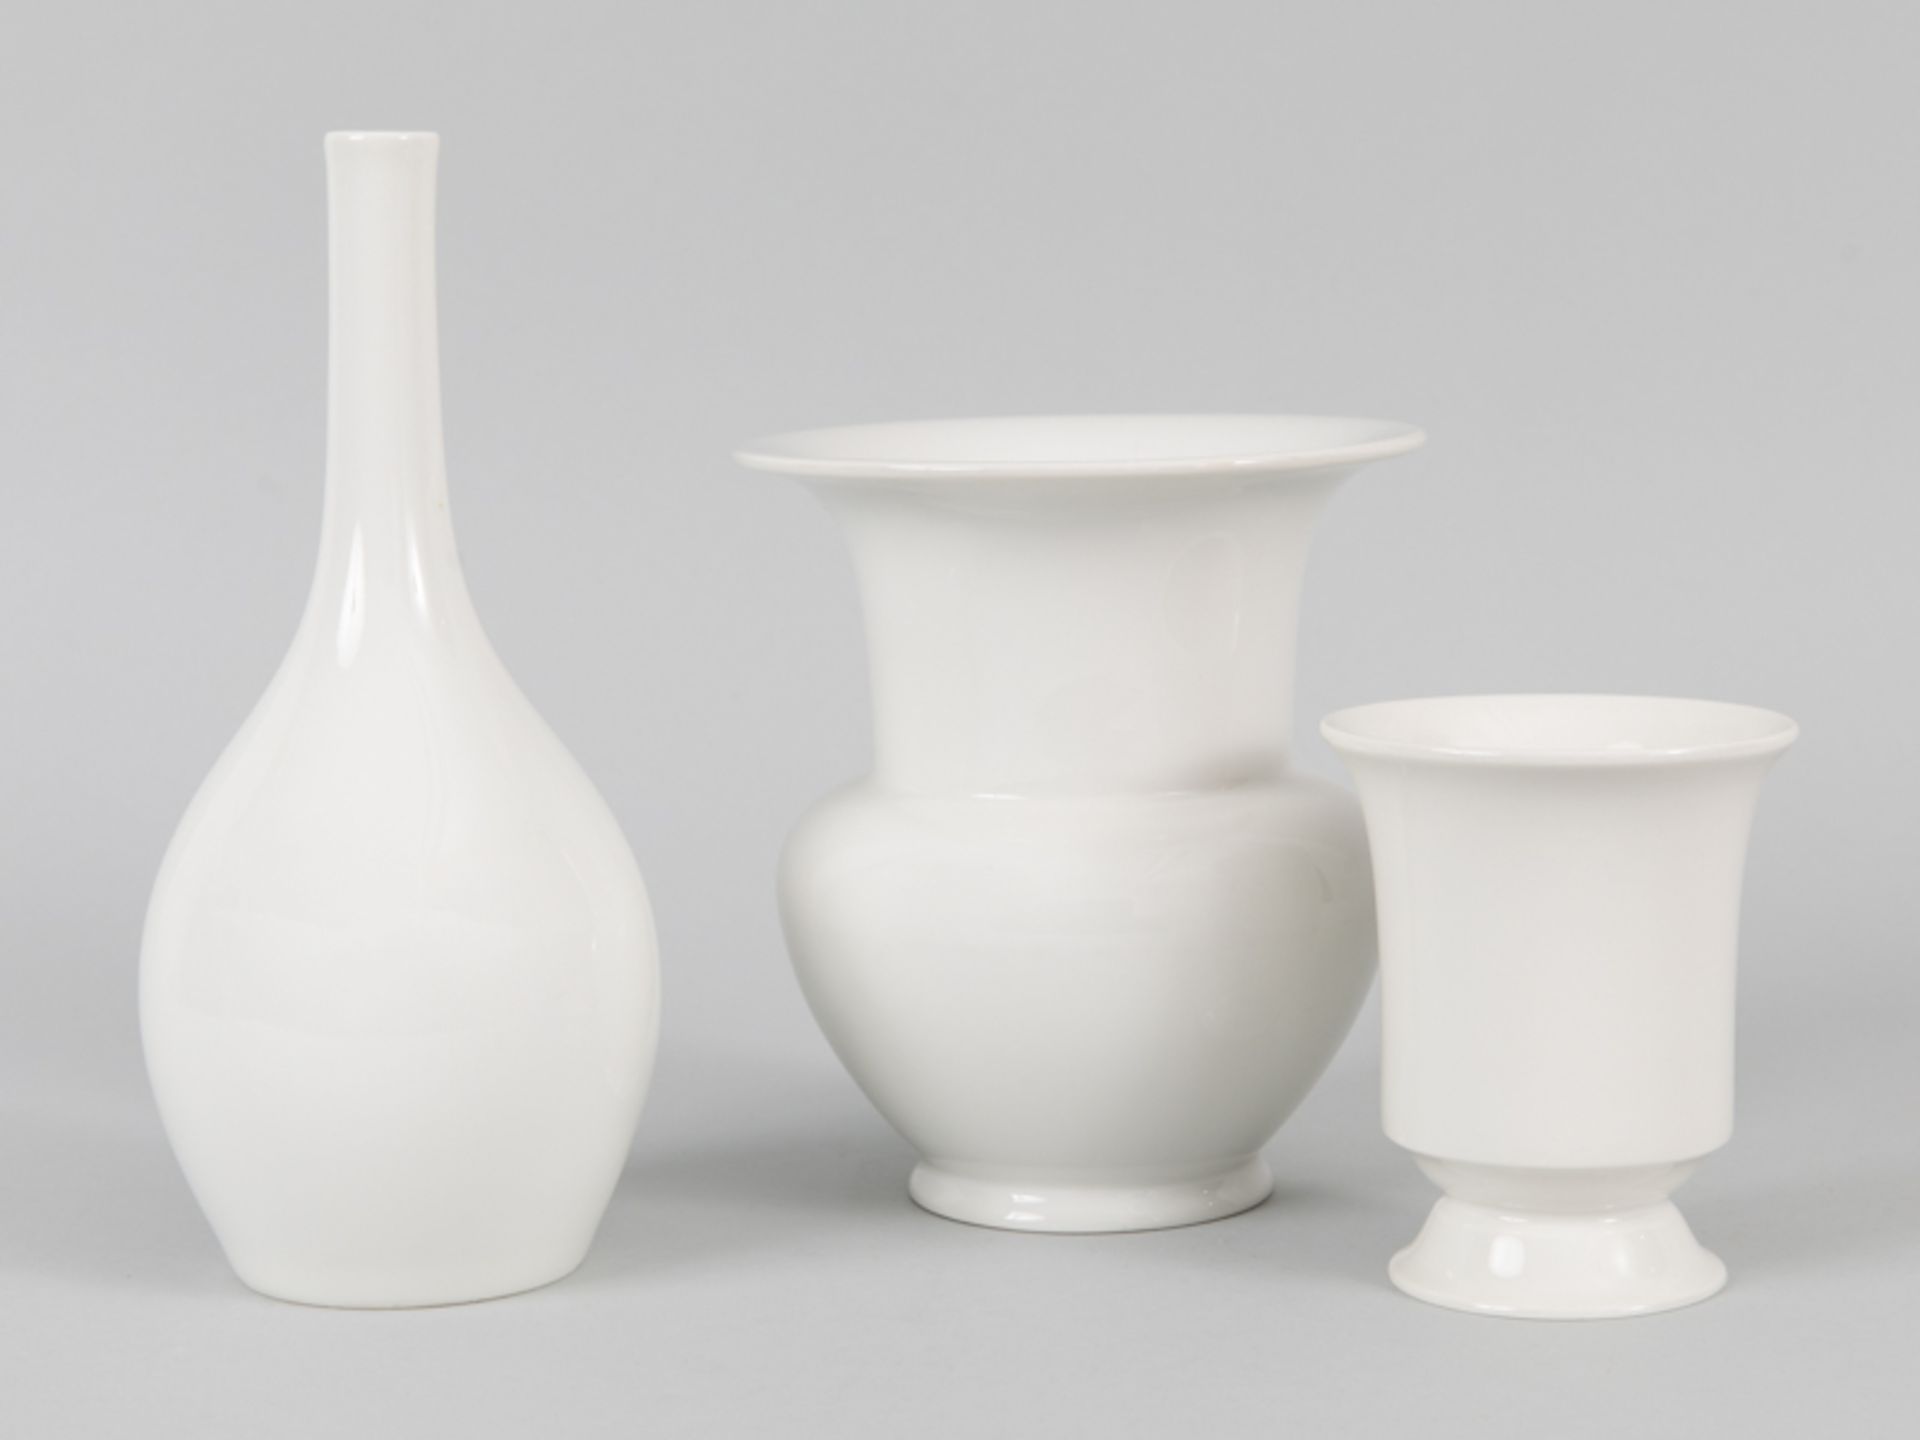 3 Vasen "Fidibus", "Flaschenform", "Becherform auf Fuß", Karl Friedrich Schinkel, Theodor Schmuz-Bau - Image 2 of 3